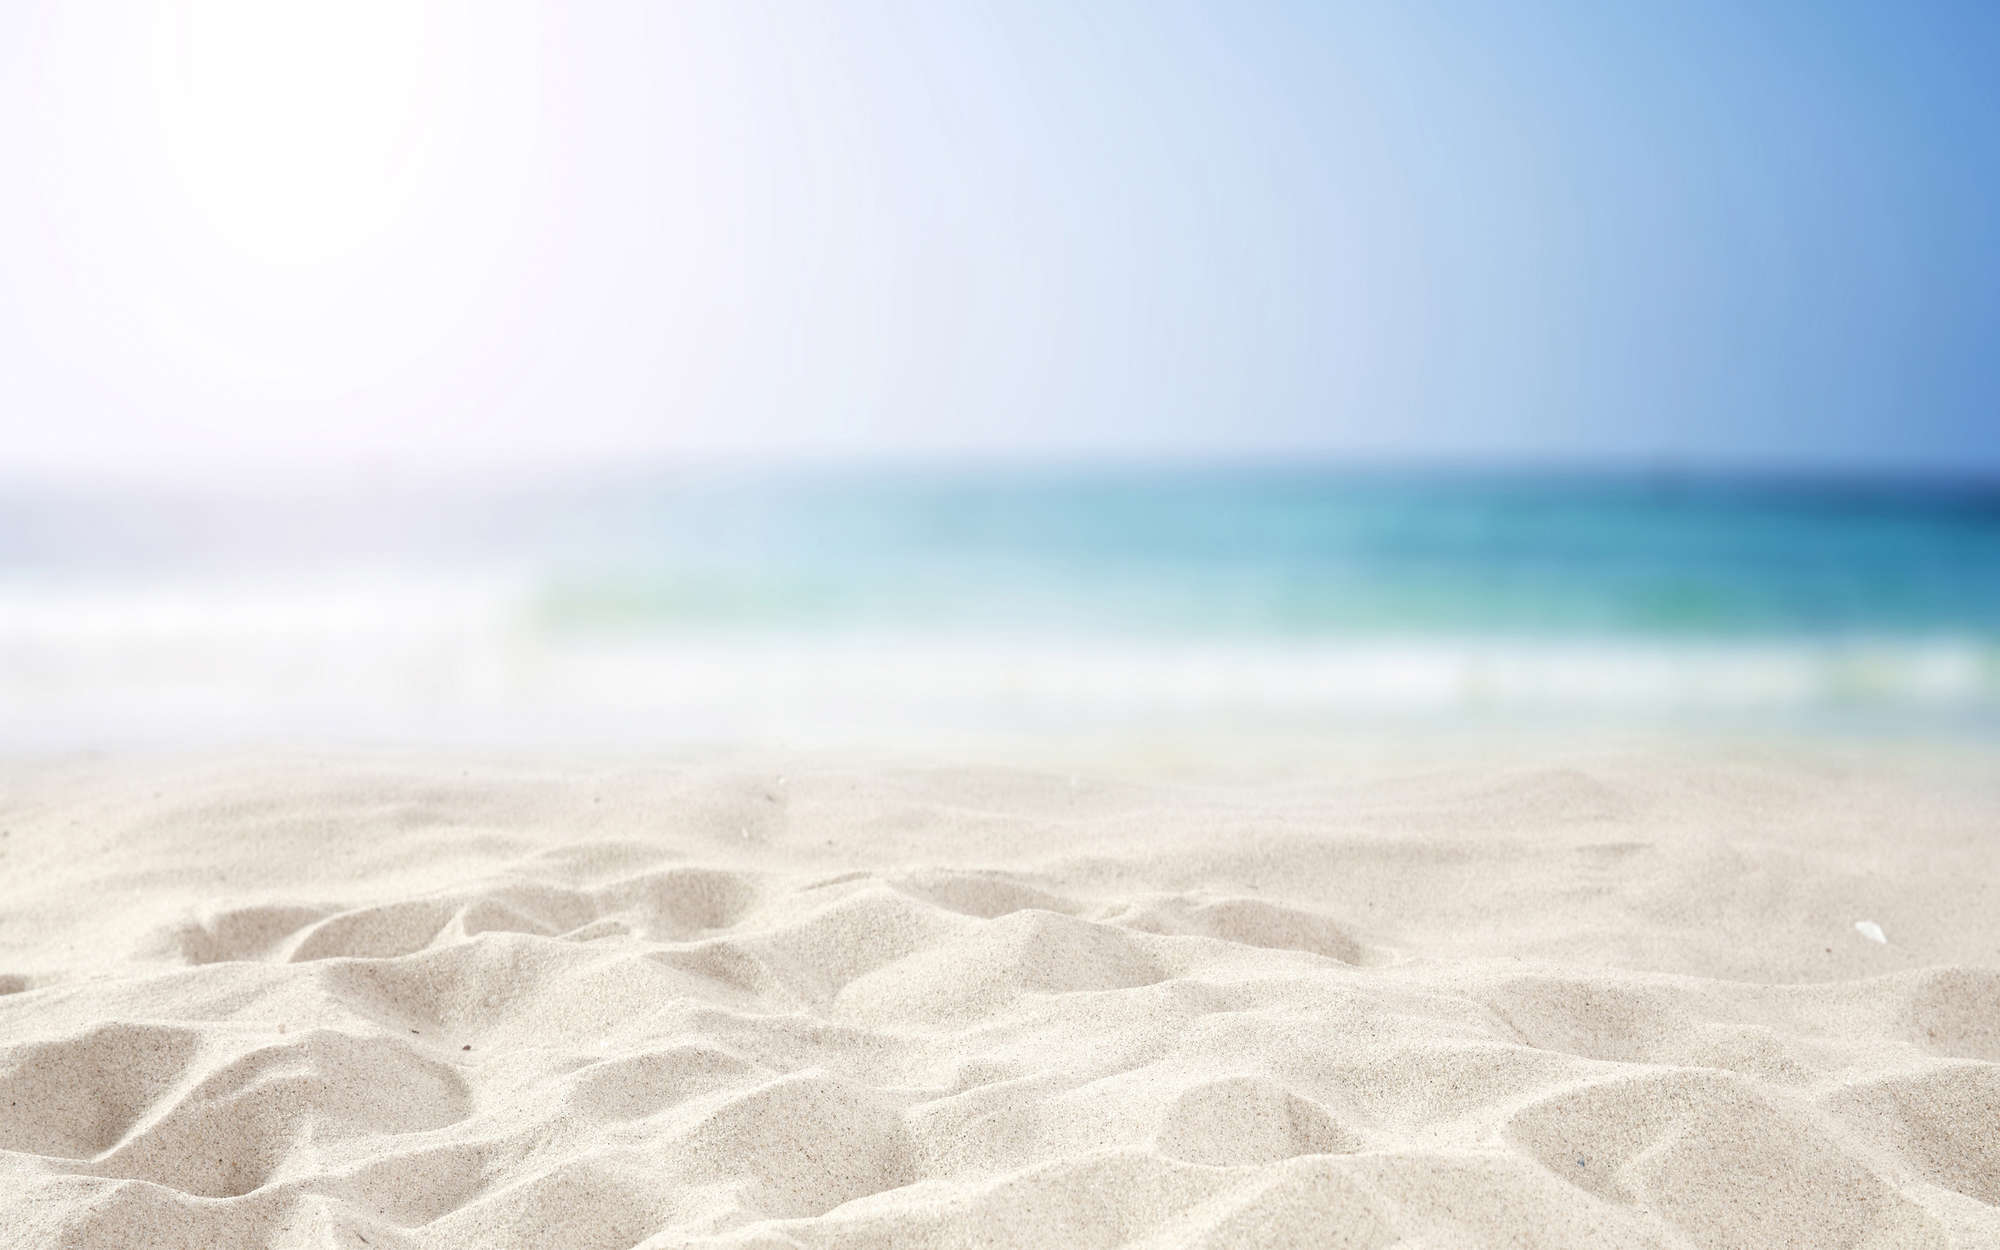             Strand met Zand in Wit Onderlaag behang - Premium Glad Vlies
        